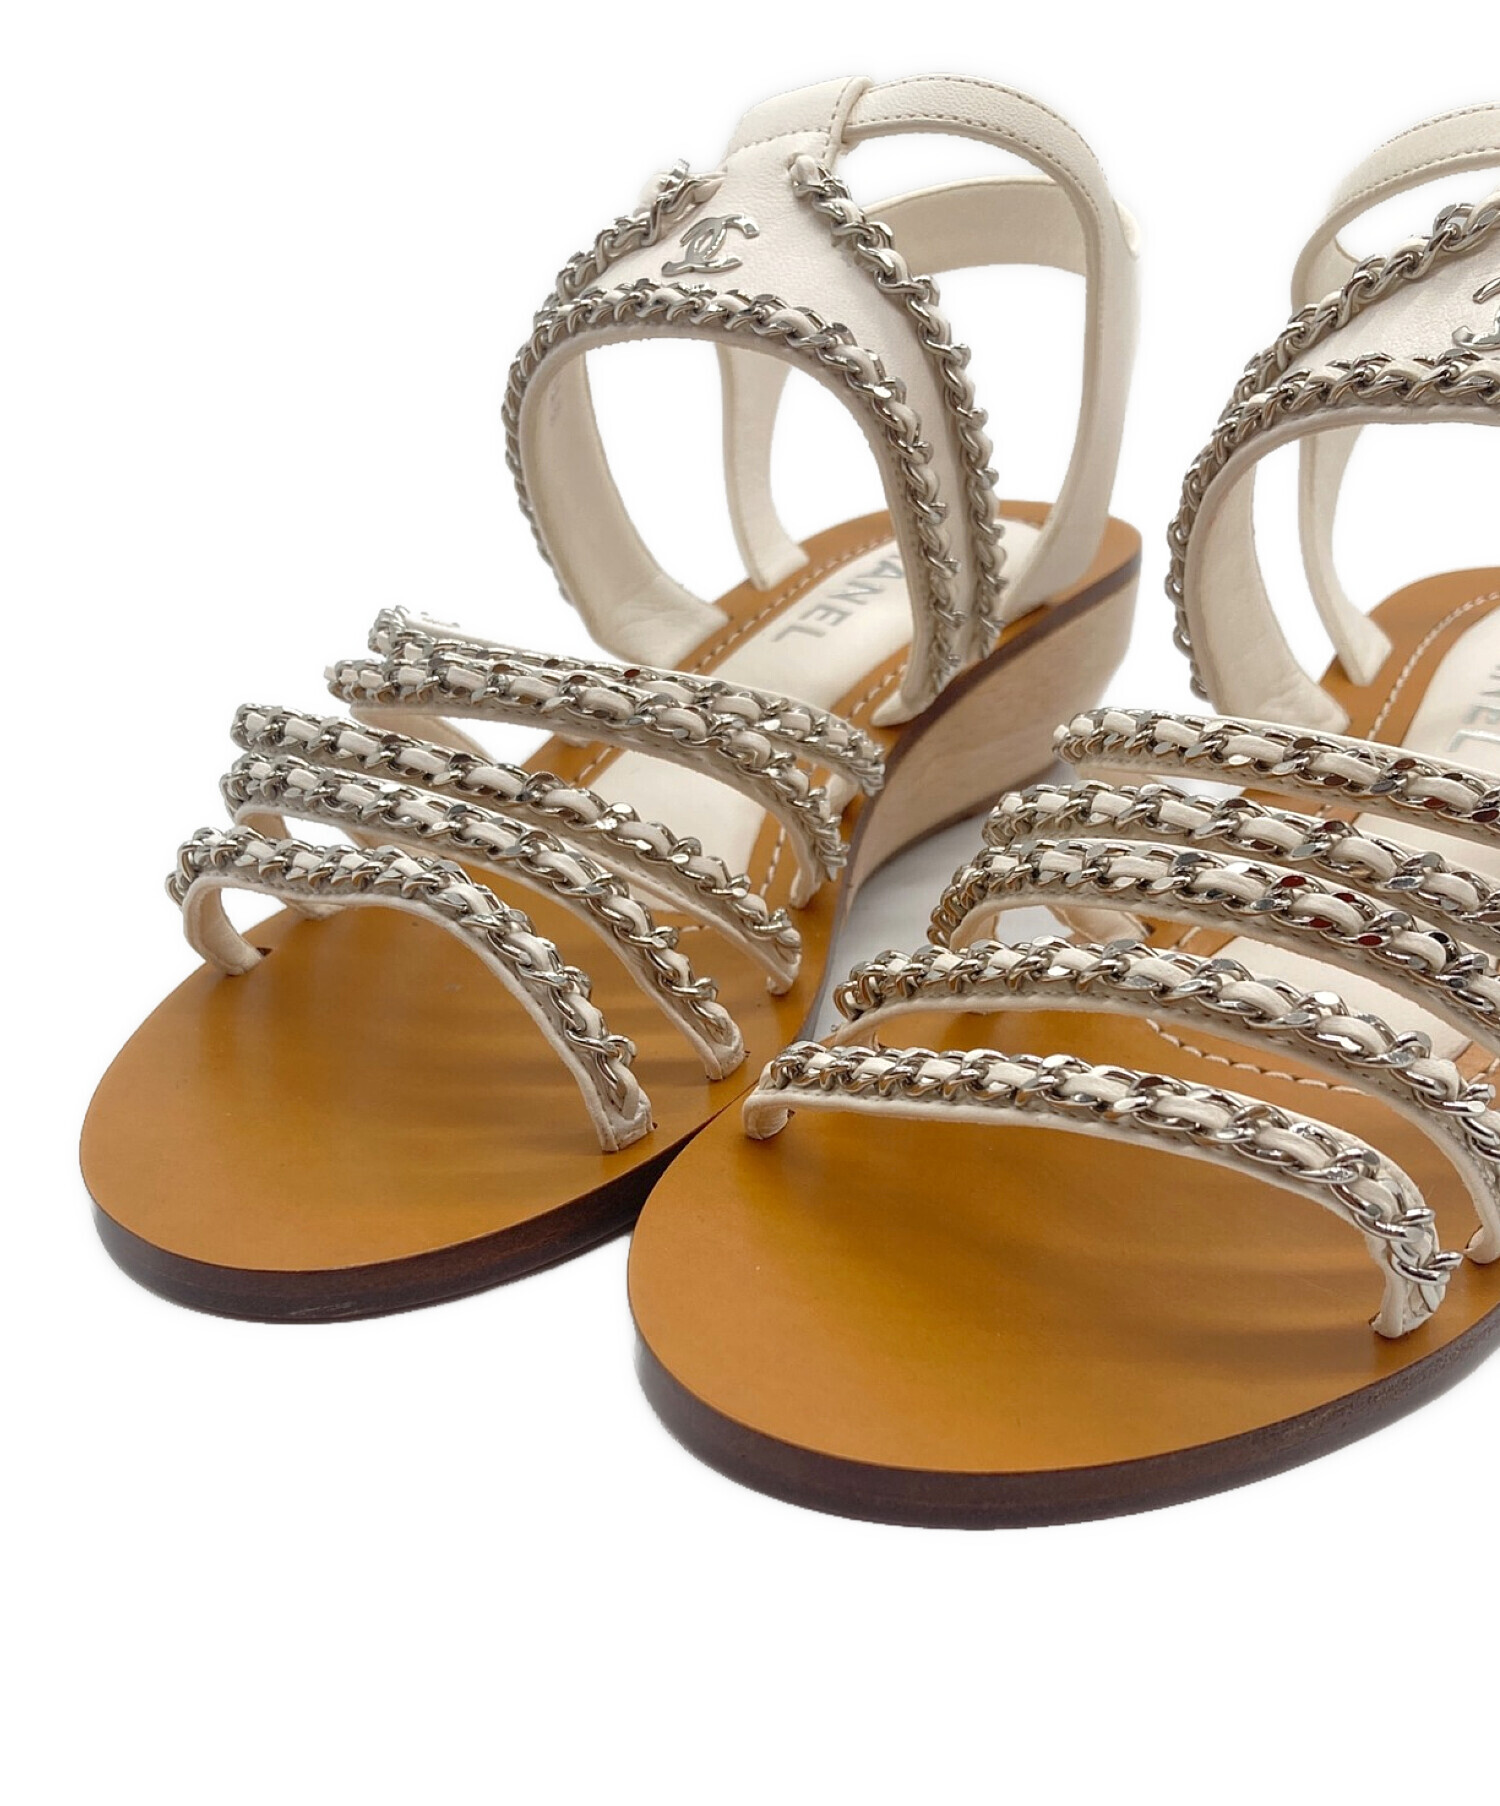 CHANEL (シャネル) Chanel Flat Sandals チェーン ストラップ ウェッジソールサンダル ホワイト×タン サイズ:39